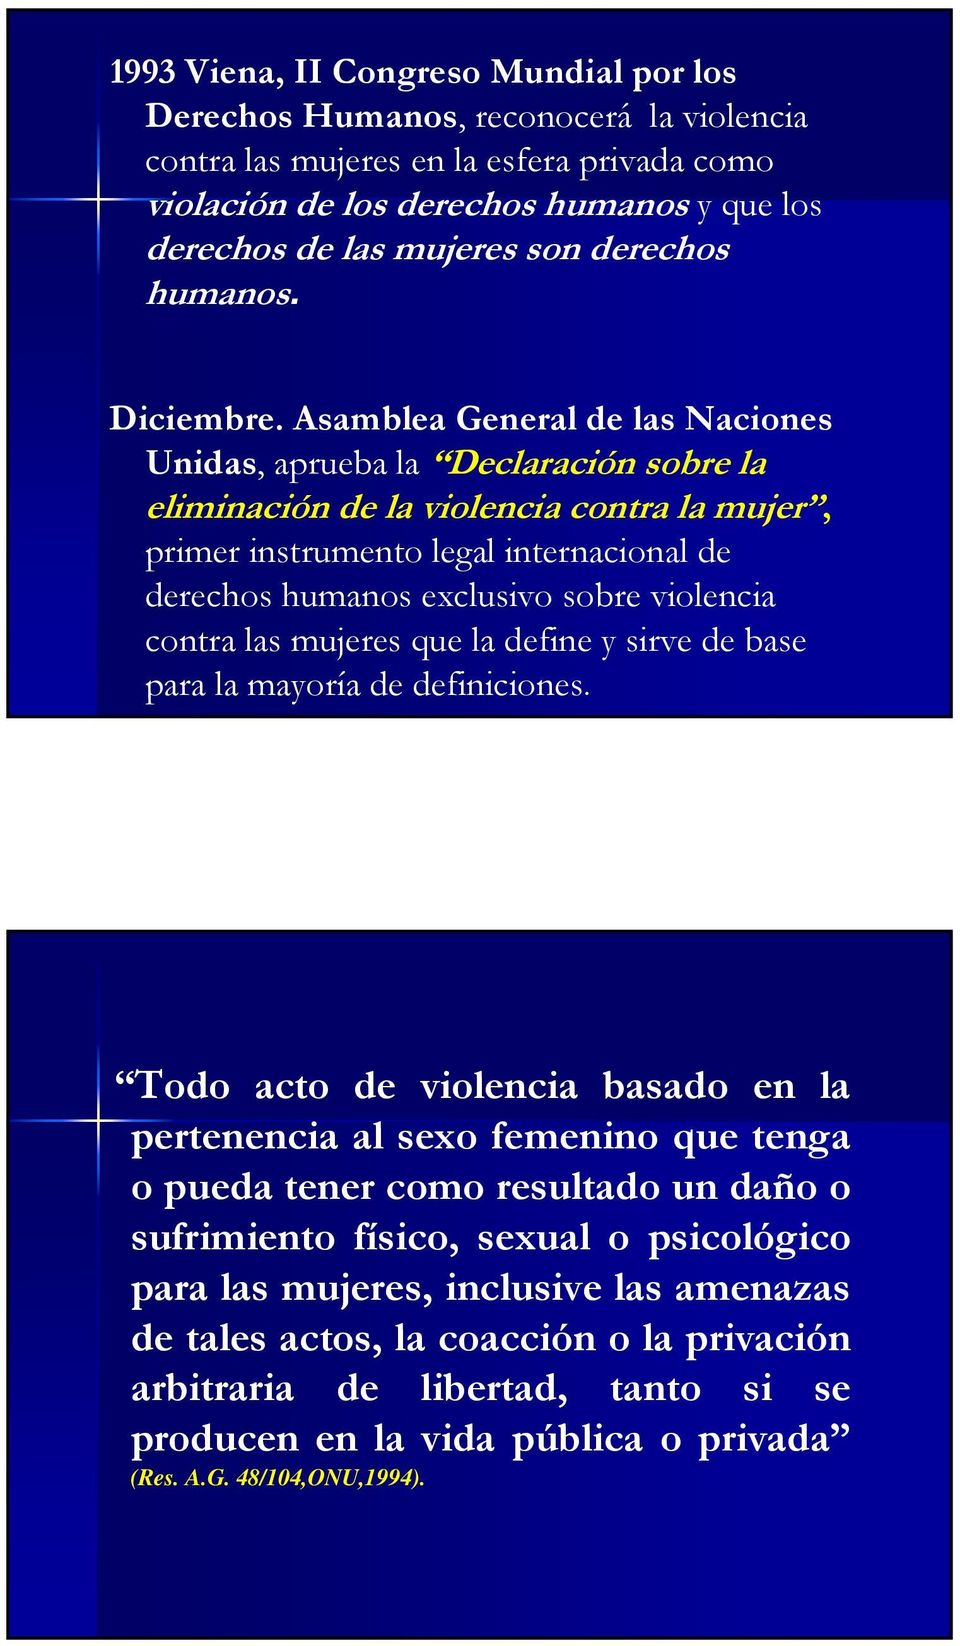 Asamblea General de las Naciones Unidas, aprueba la Declaración sobre la eliminación de la violencia contra la mujer, primer instrumento legal internacional de derechos humanos exclusivo sobre